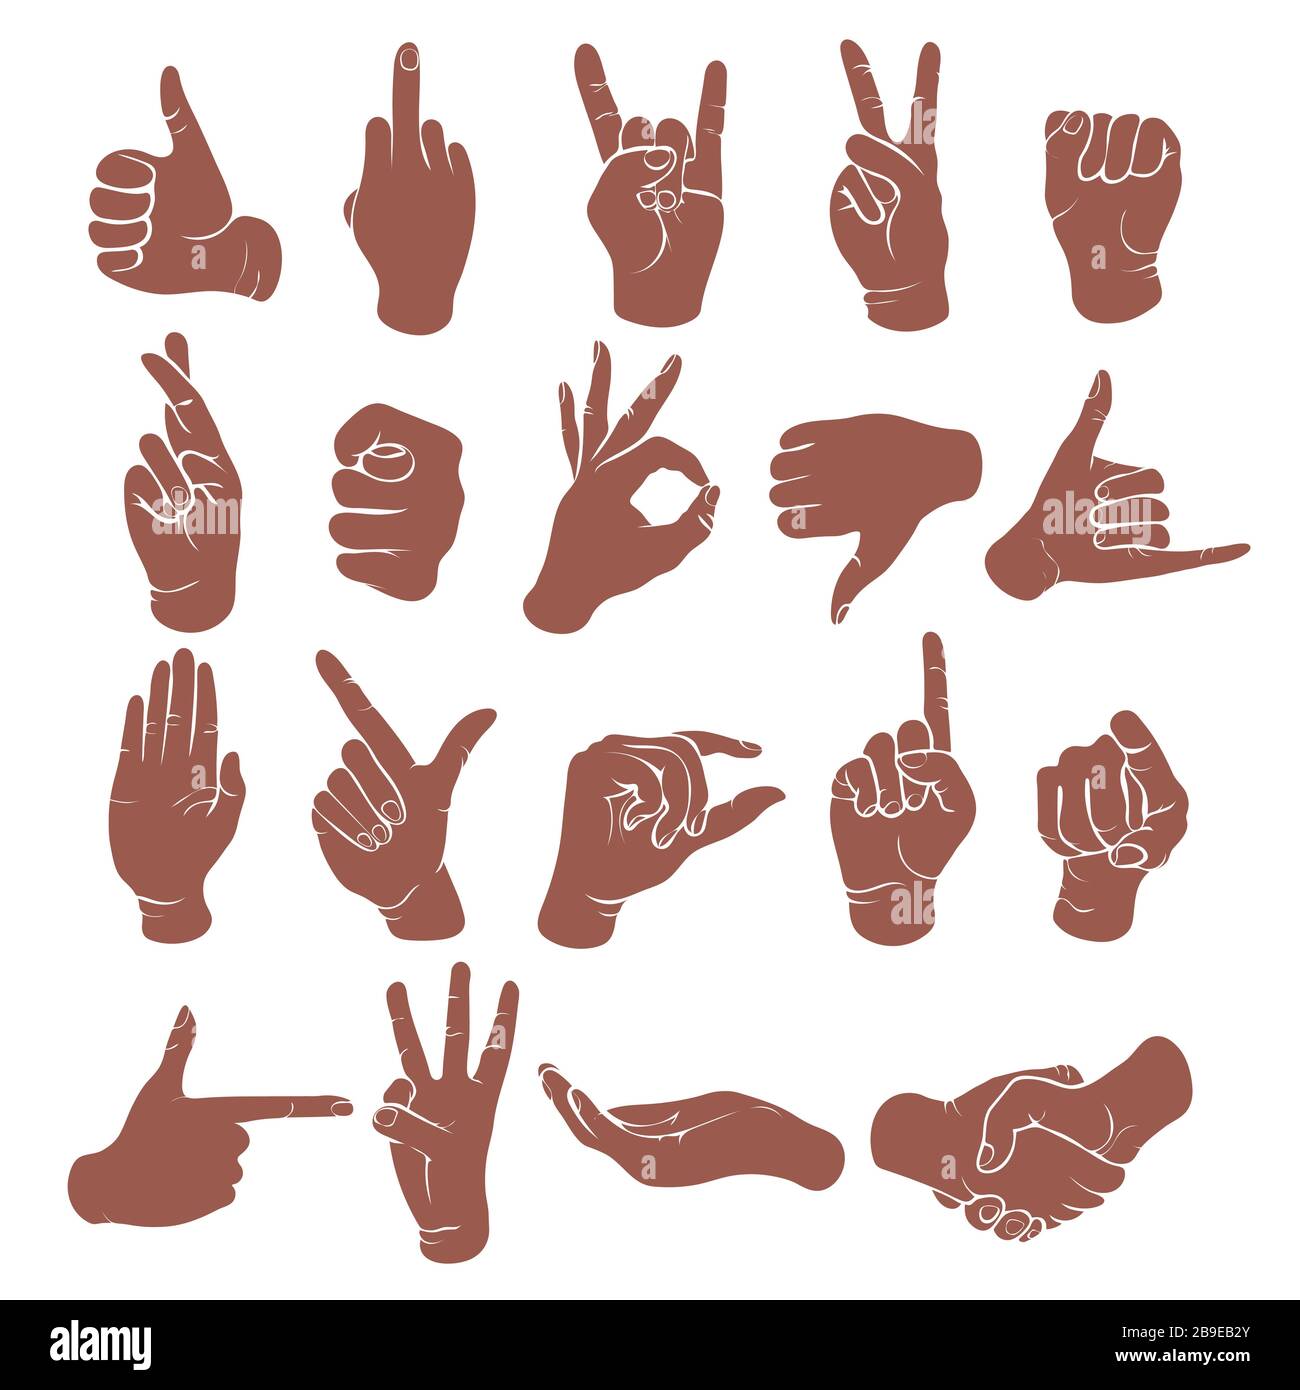 Gesti delle mani, segni delle dita, set di icone del linguaggio dei segni, stencil, logo, silhouette. Disegno monocromatico del polso, mani che mostrano vari simboli isol classico Illustrazione Vettoriale